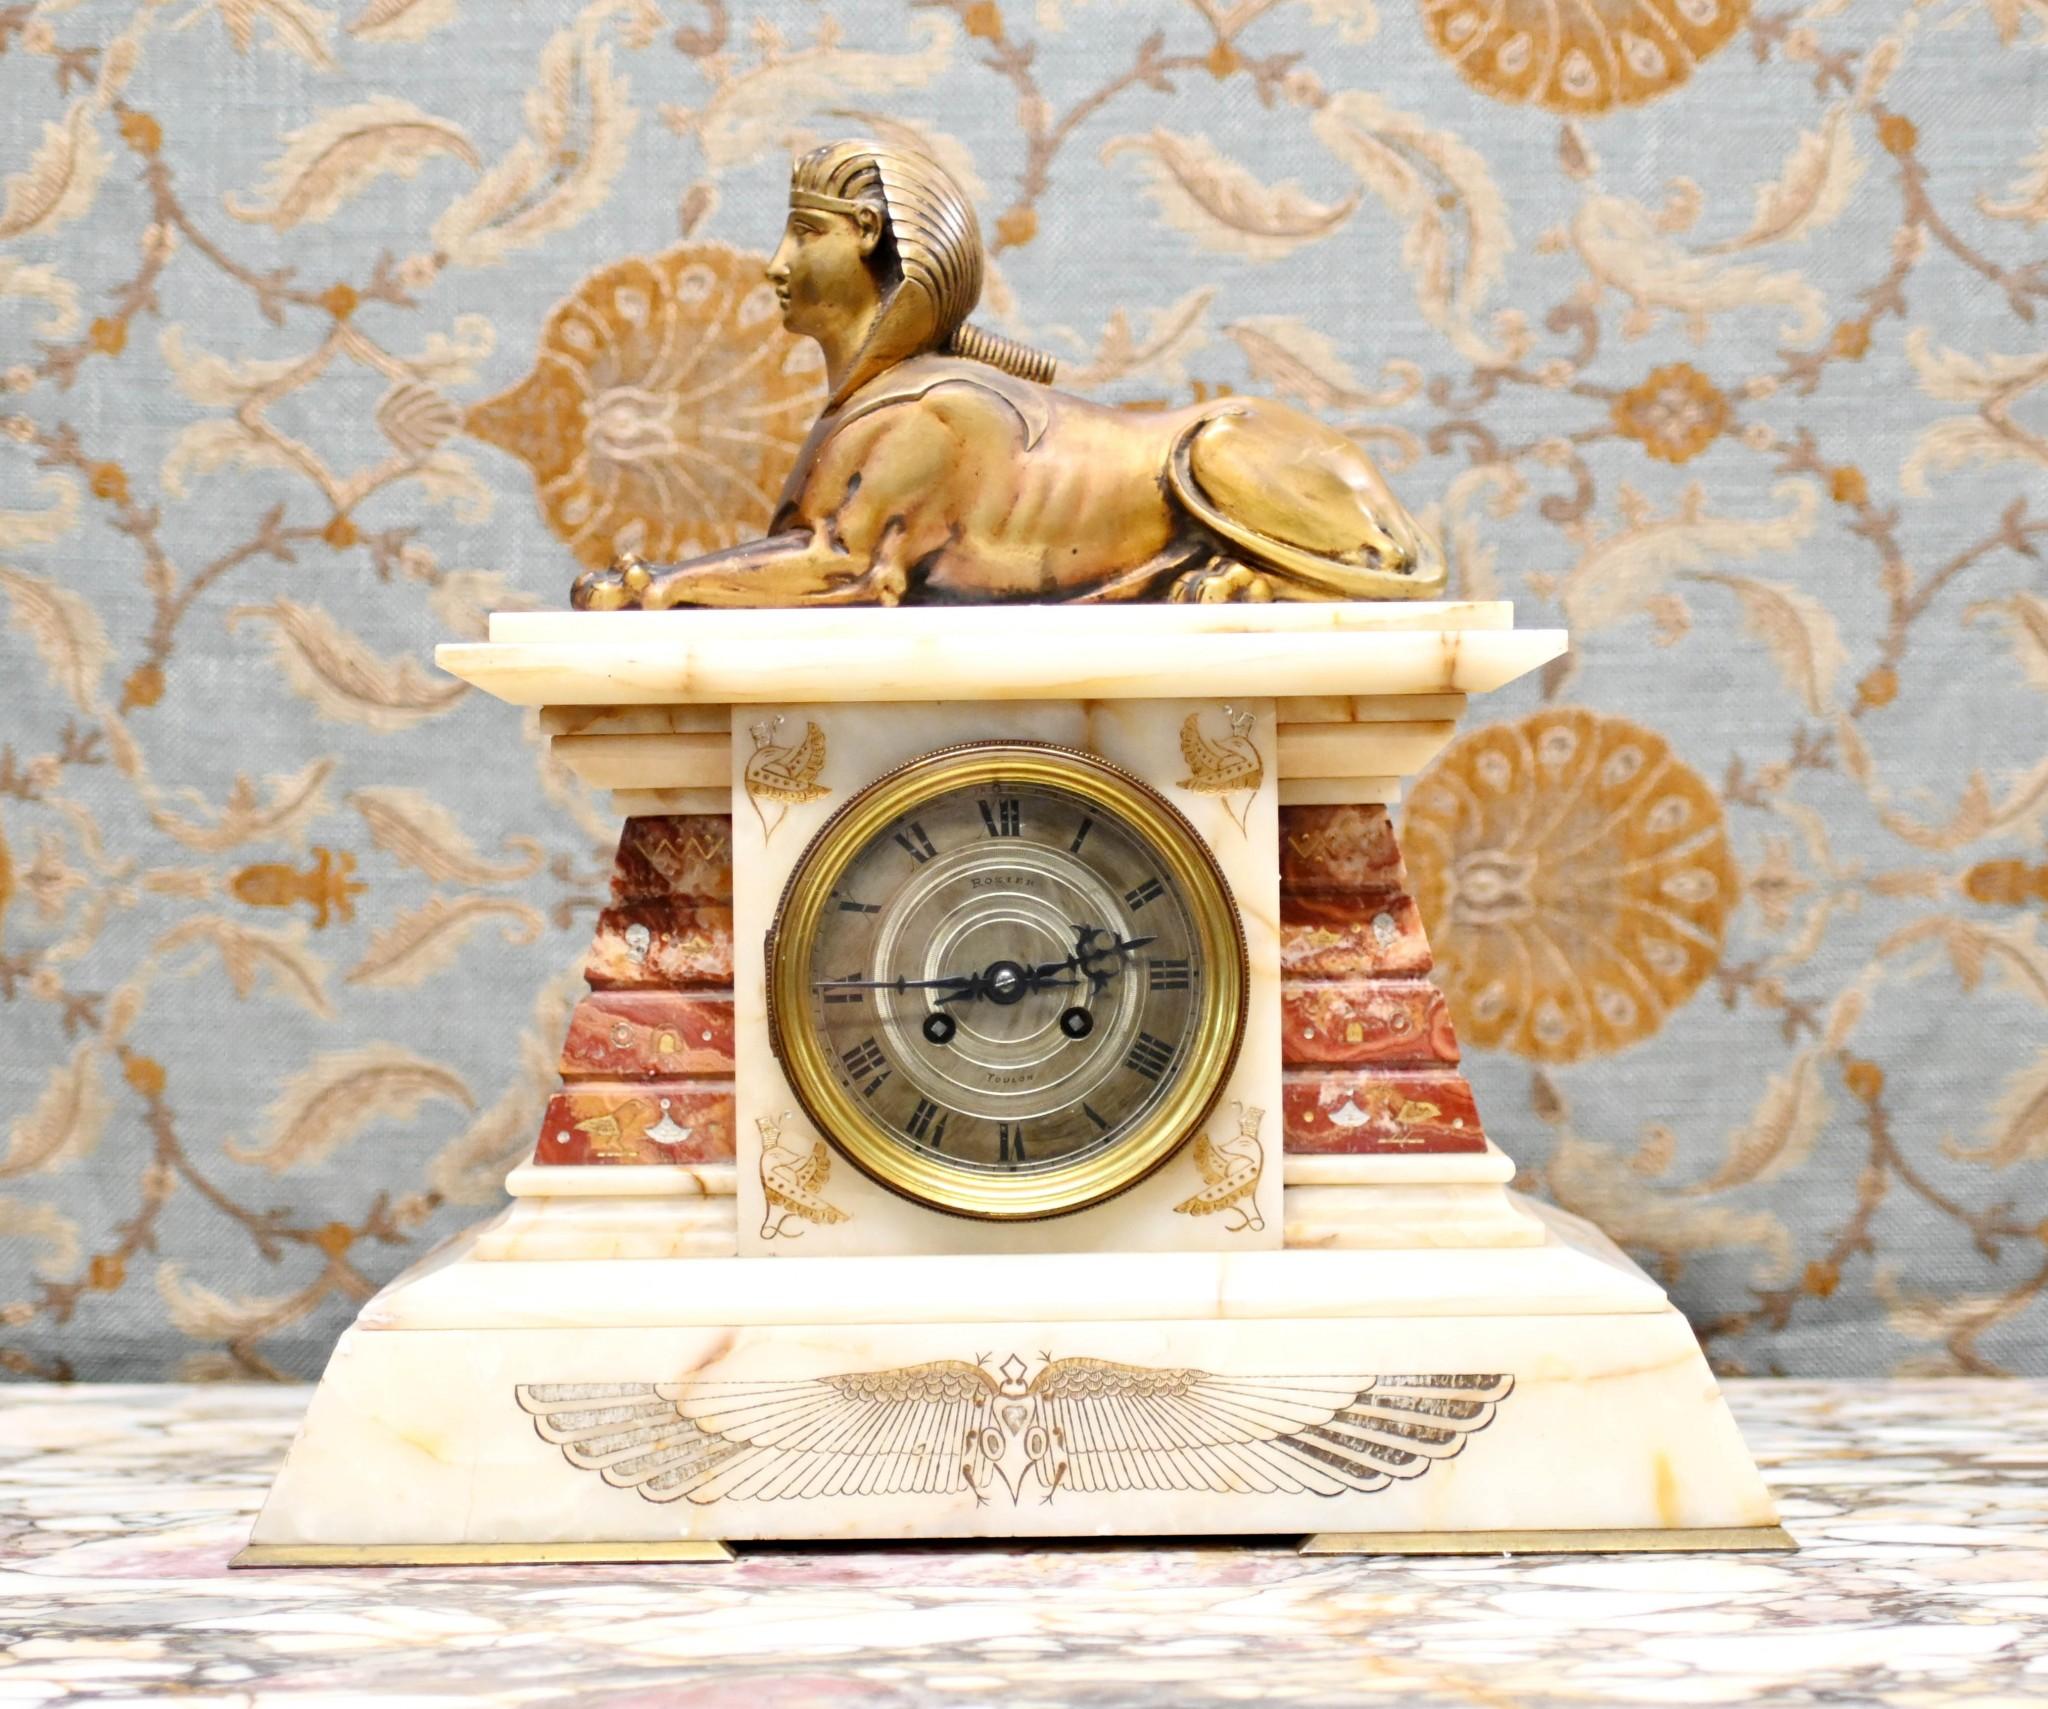 Superbe pendule de cheminée Empire française en marbre et en vermeil
La pièce est surmontée - très haut Empire - par le sphinx doré
Style égyptien classique avec des supports en marbre et des motifs égyptiens.
Le cadran de l'horloge porte